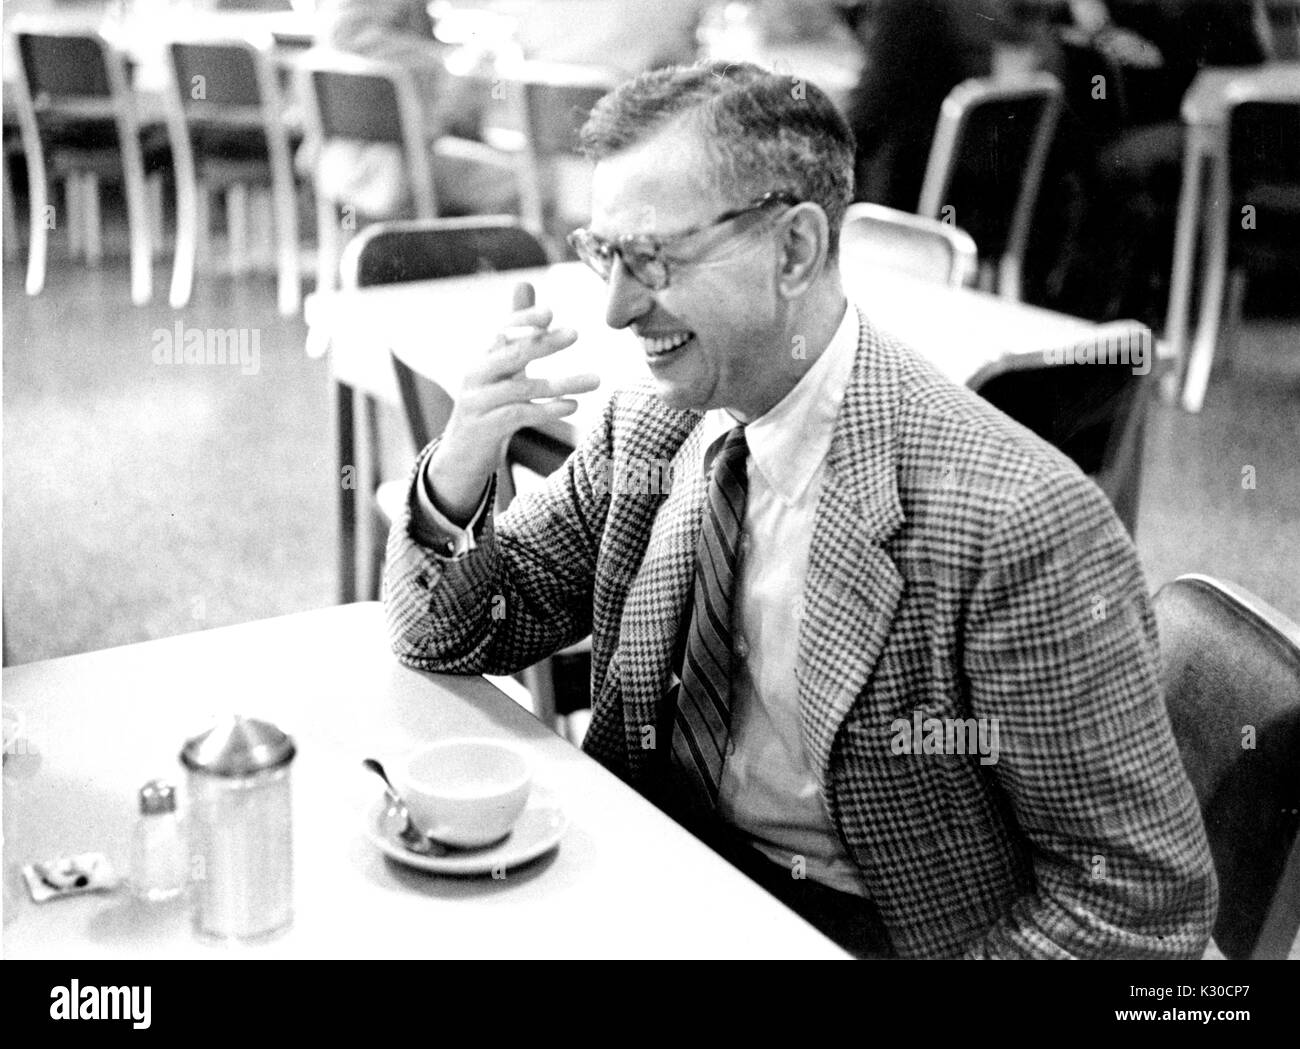 Tragen tweed Blazer und Tortoise Gläser, Thomas Ira Koch, Professor für Politische Philosophie an der Johns Hopkins University, sitzt an einem Tisch in einem Diner seine Hand halten bis zu seinem Gesicht beim Lachen, eine leere Kaffeetasse vor ihm, Baltimore, Maryland, 1956. Stockfoto